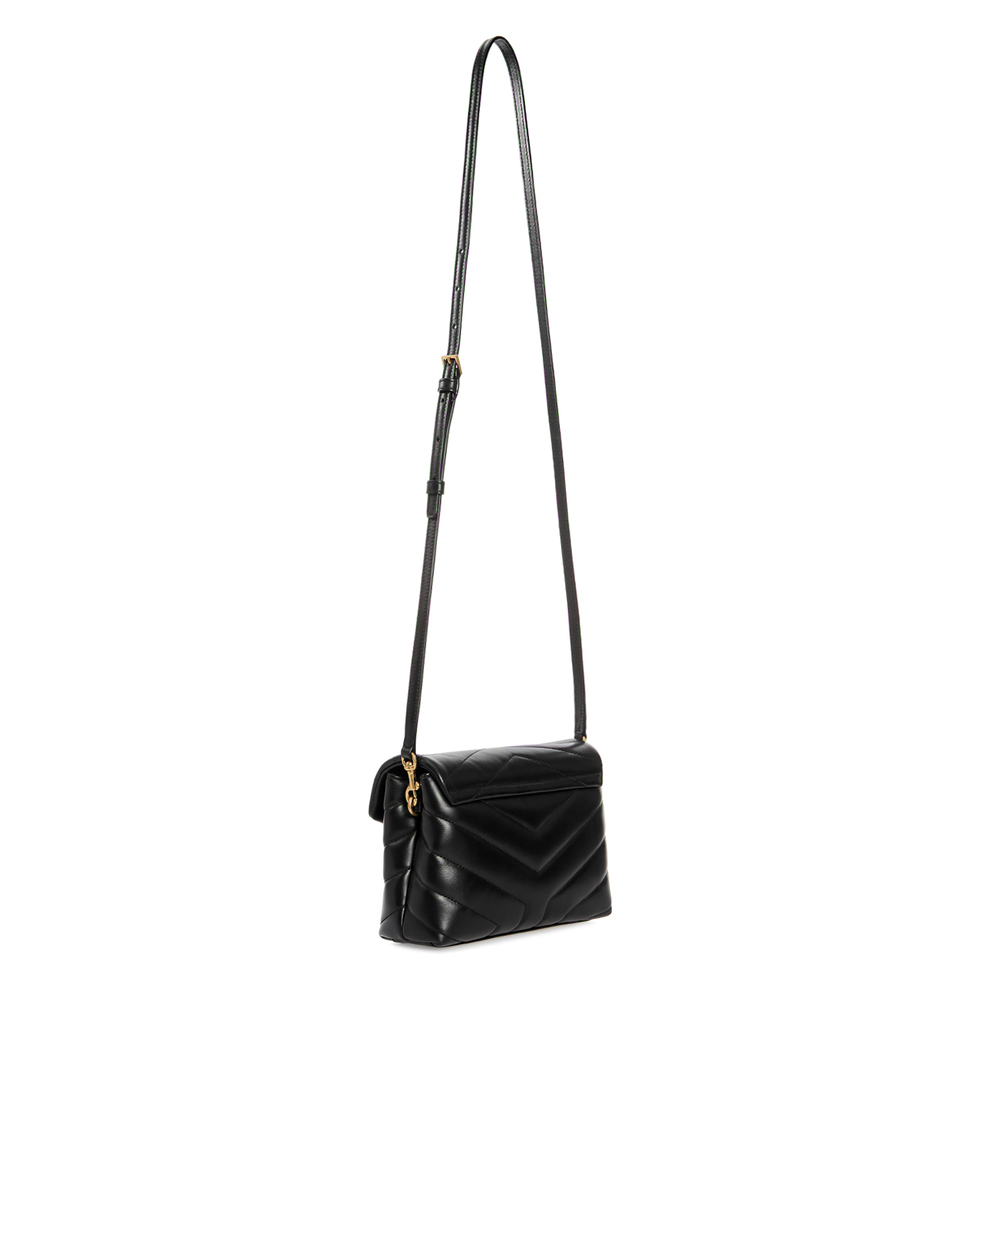 Кожаная сумка Loulou Toy Saint Laurent 678401-DV707, черный цвет • Купить в интернет-магазине Kameron